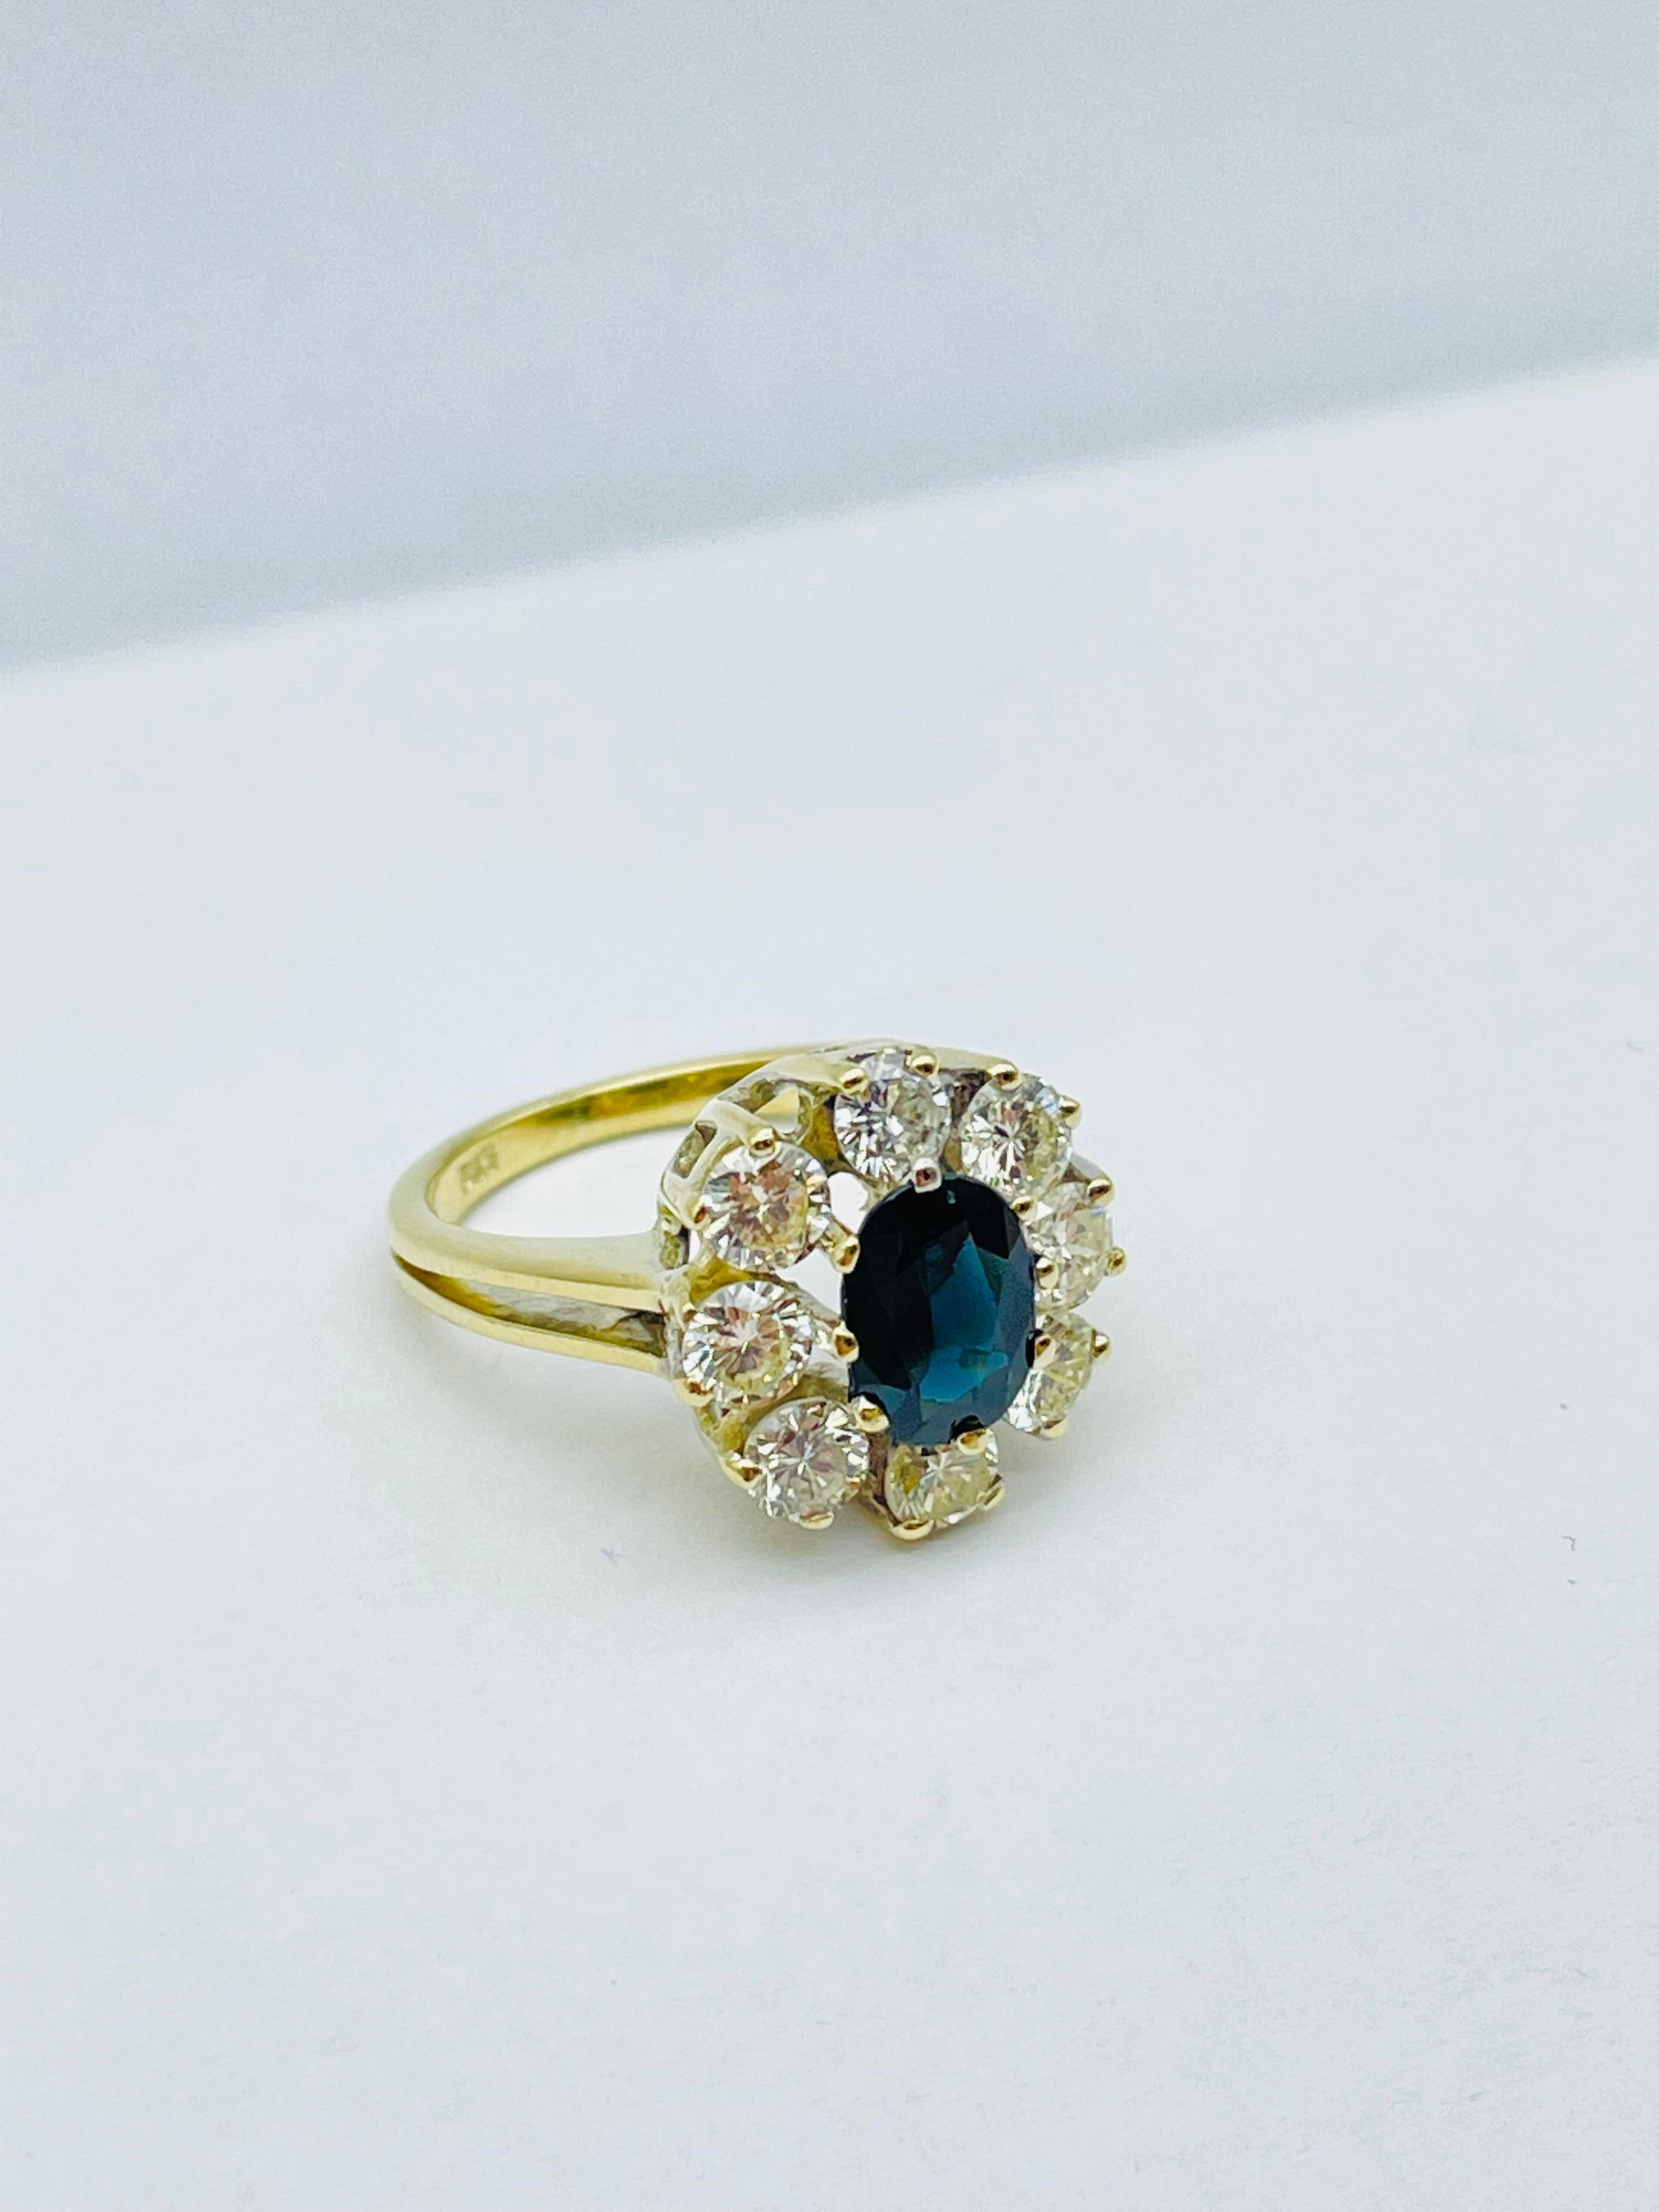 Unique 14k Gold Ring with 8 Brilliant-Cut Diamonds Each 0.15 Carat Blue Sapphire For Sale 6